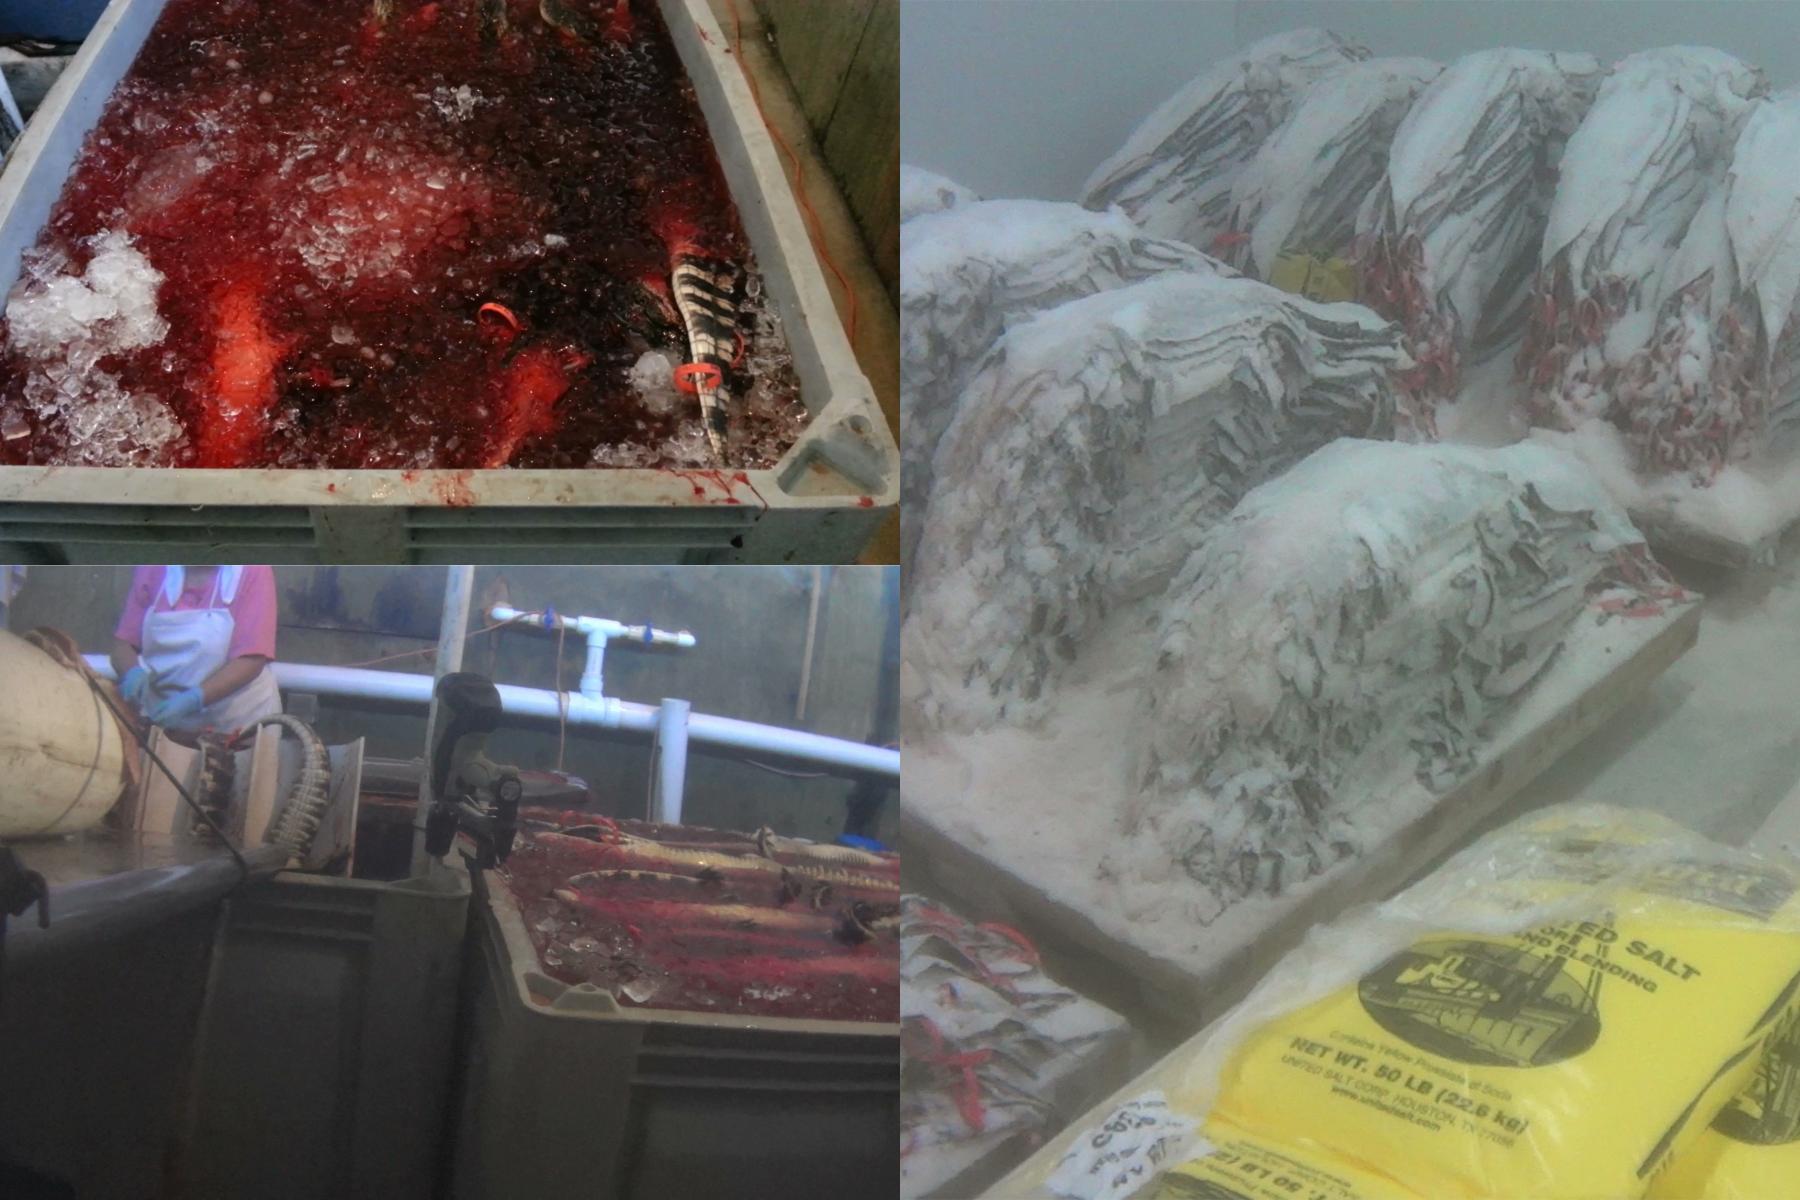 Cruel Inhumane Slaughter of Alligators for a $43,000 Bag 